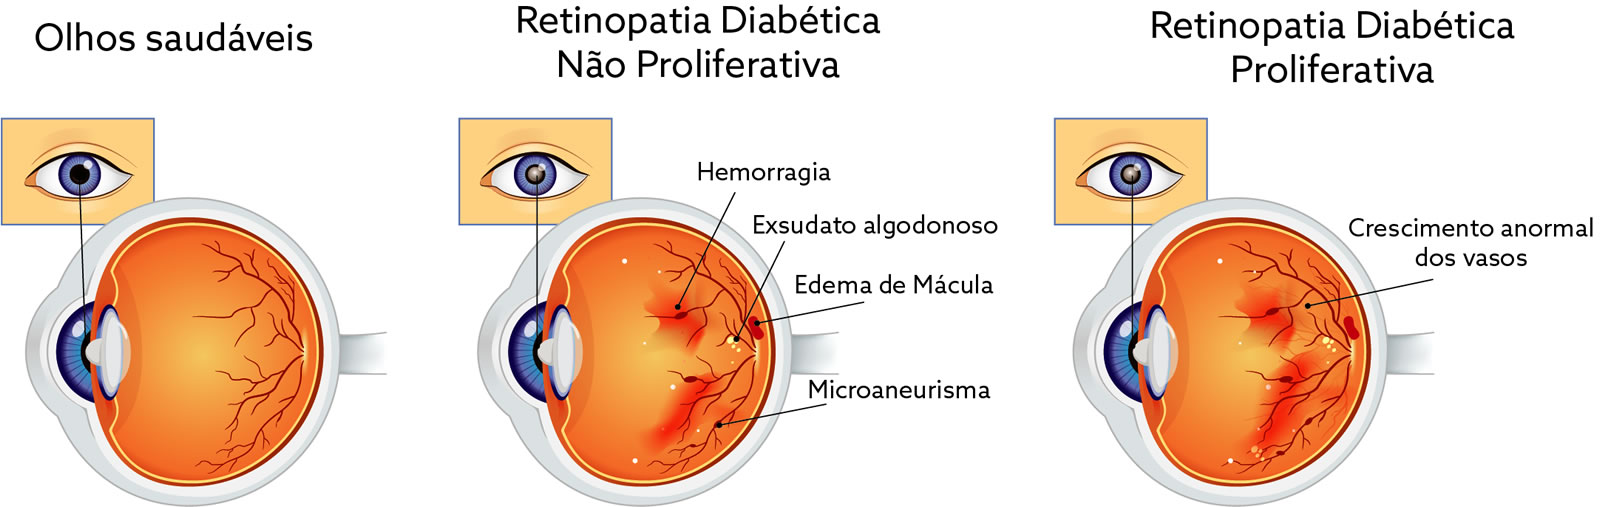 Infografico Retinopatia Diabetica